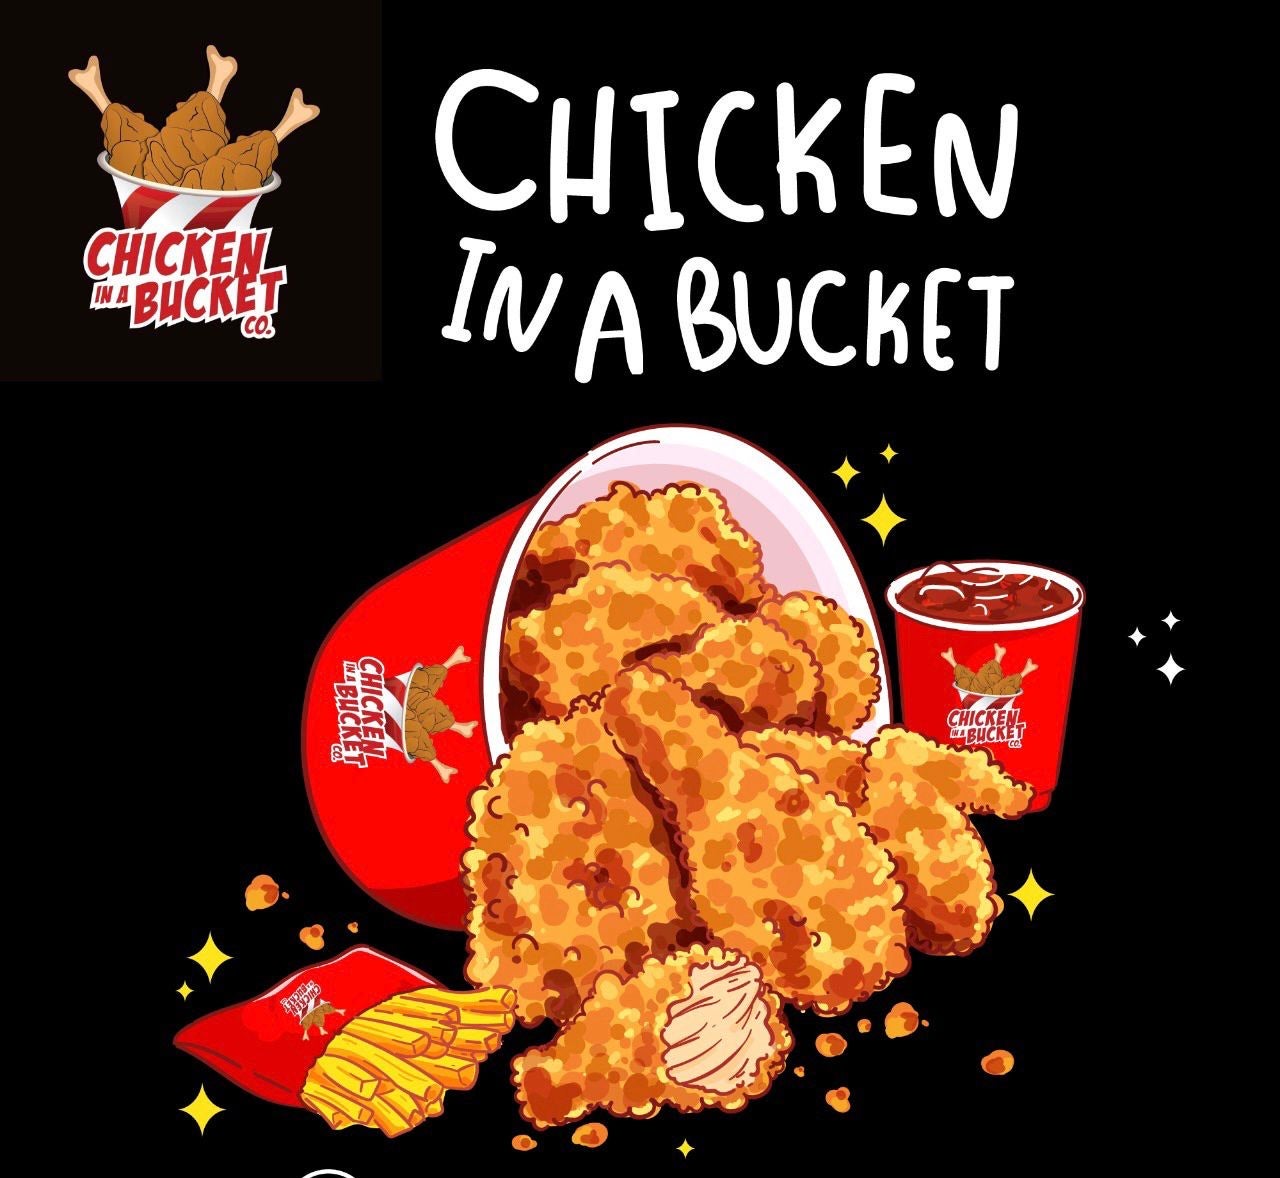 Home | Chicken in a Bucket